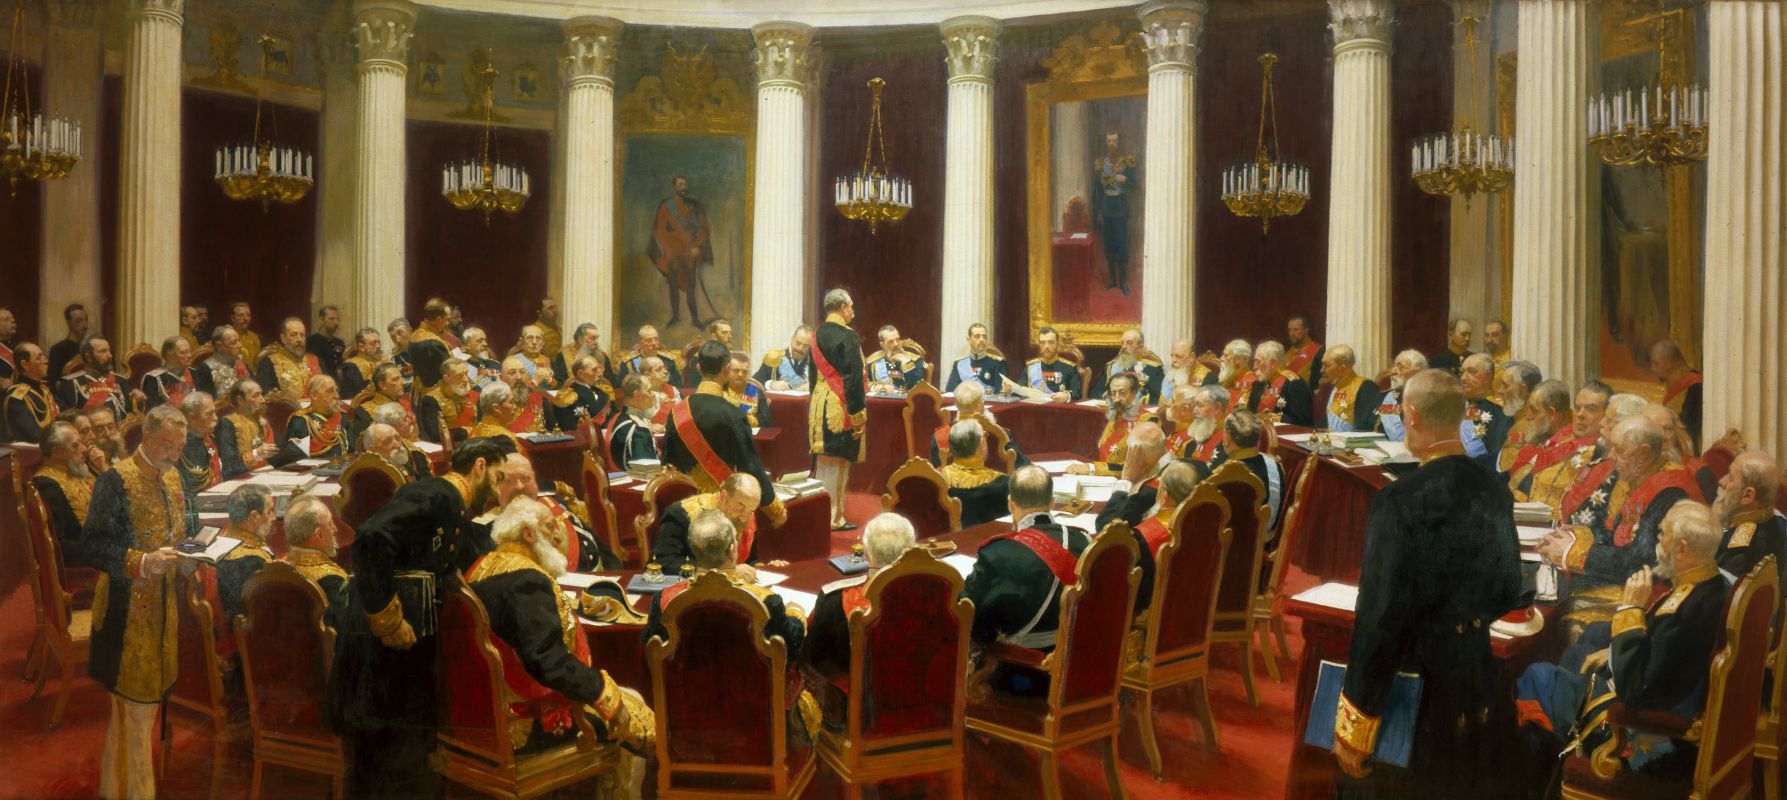 1 Торжественное заседание Государственного совета 7 мая 1901 года в день столетнего юбилея со дня его учреждения (artchive.ru).jpg